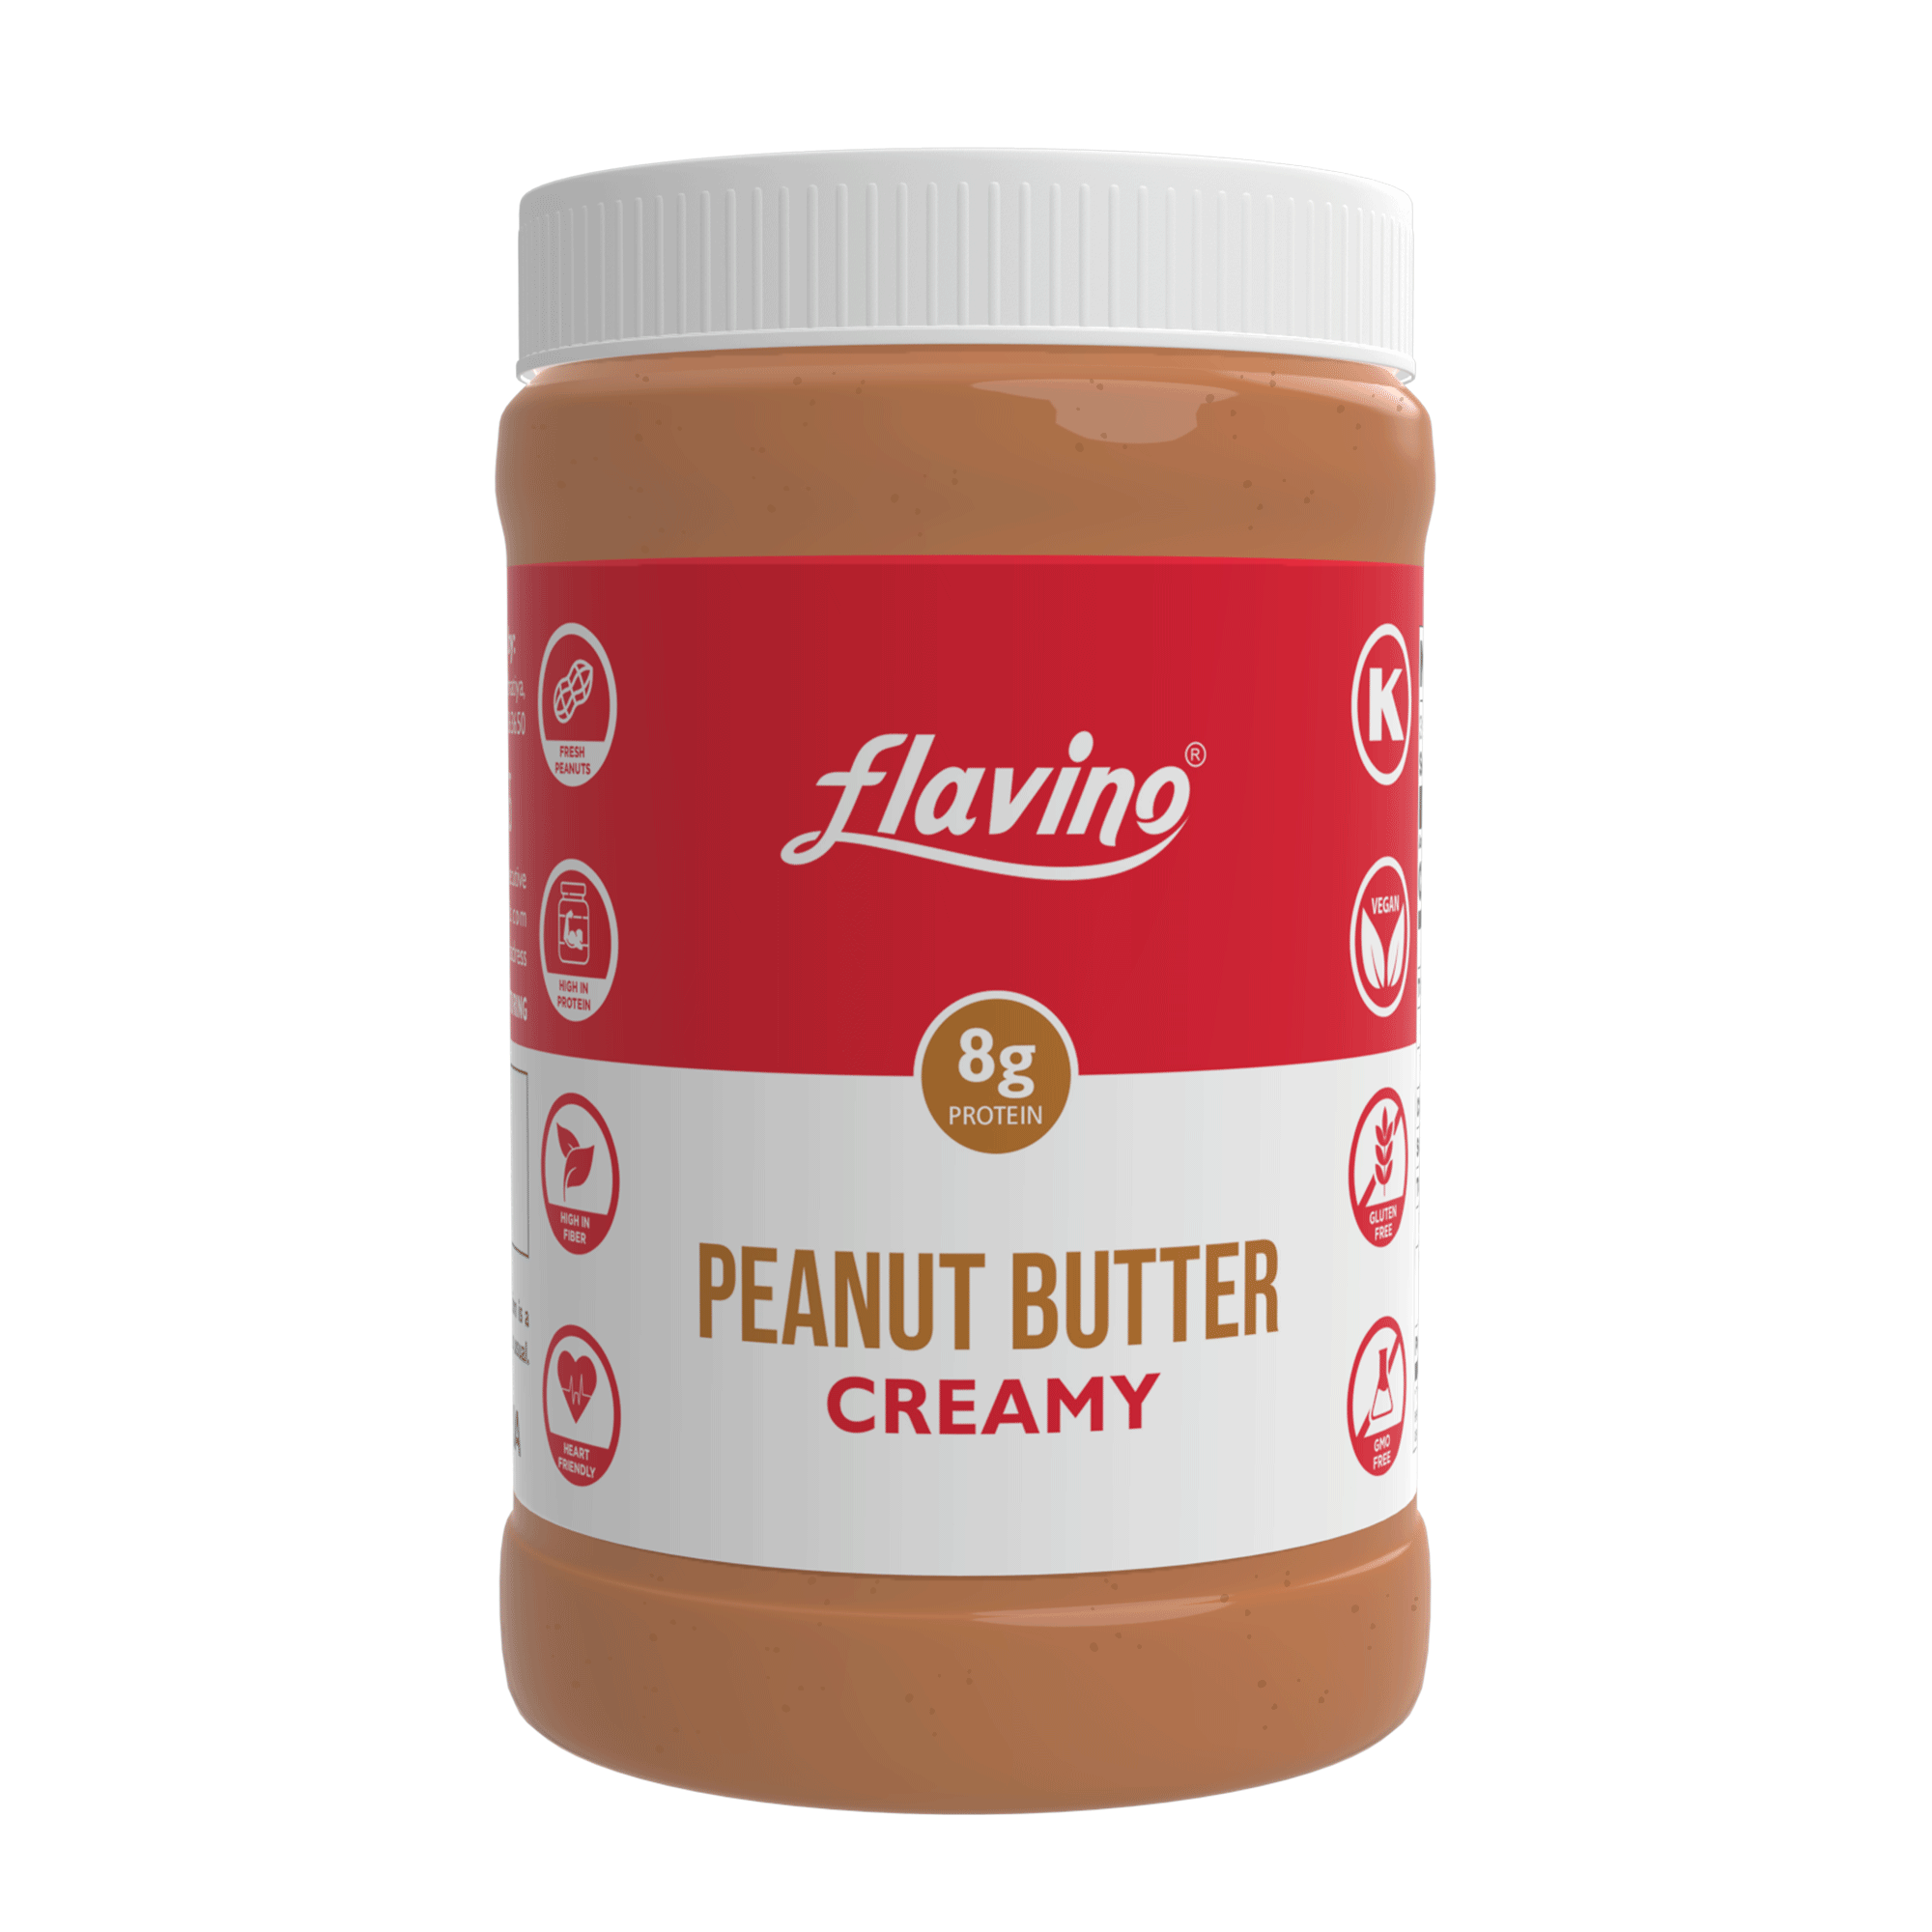 Flavino Peanut Butter Creamy